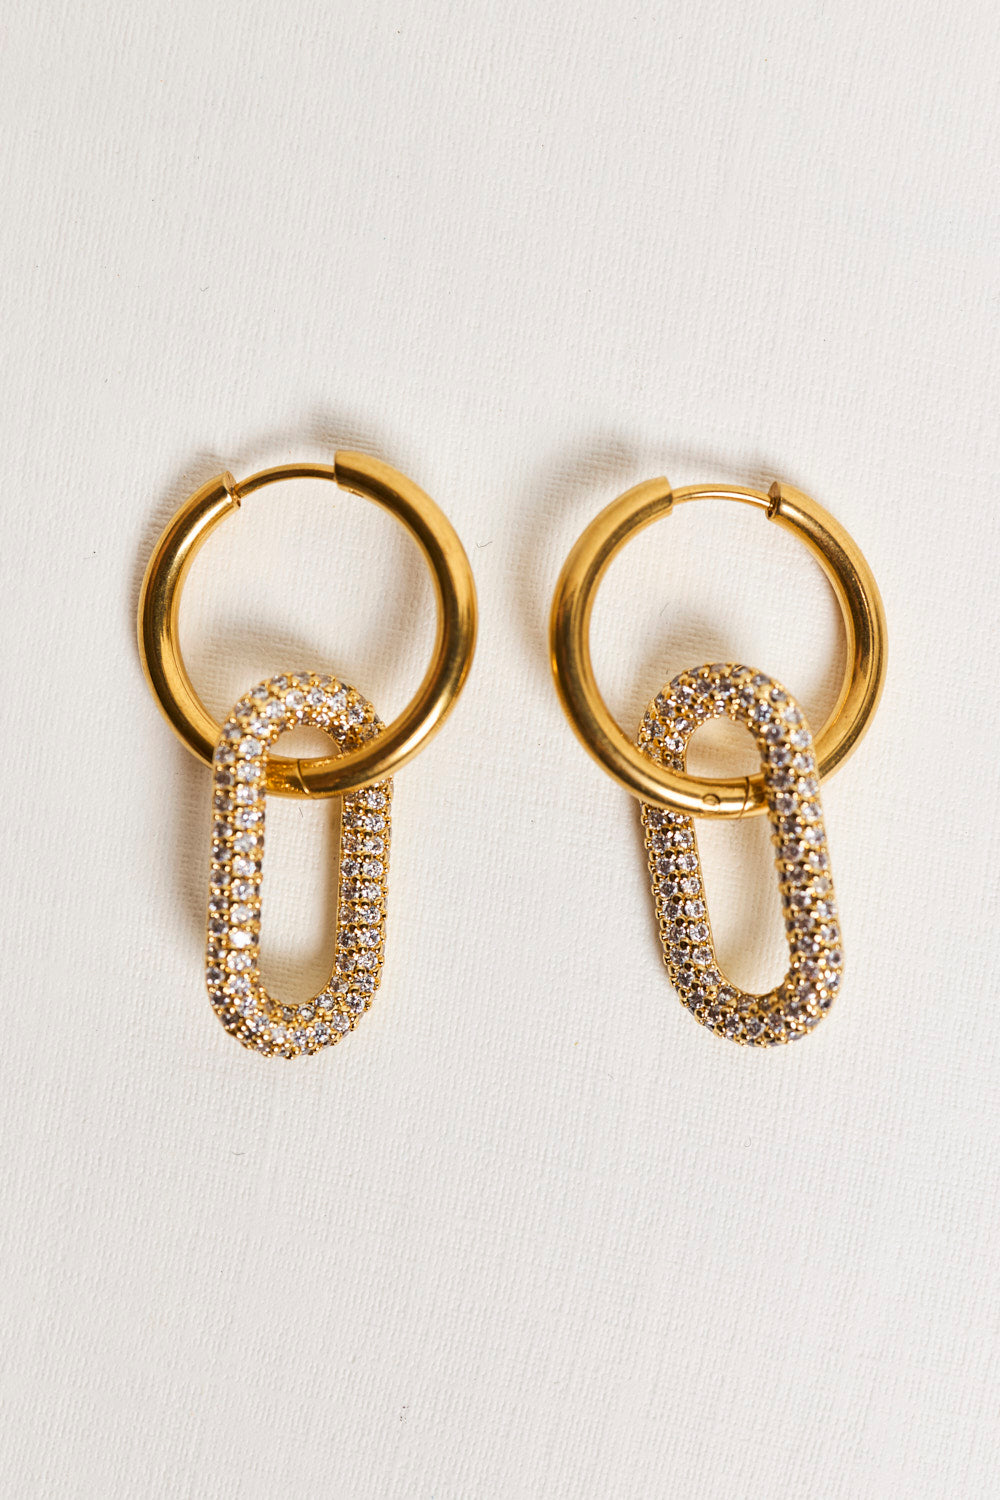 Golden Oval Crystal Earrings